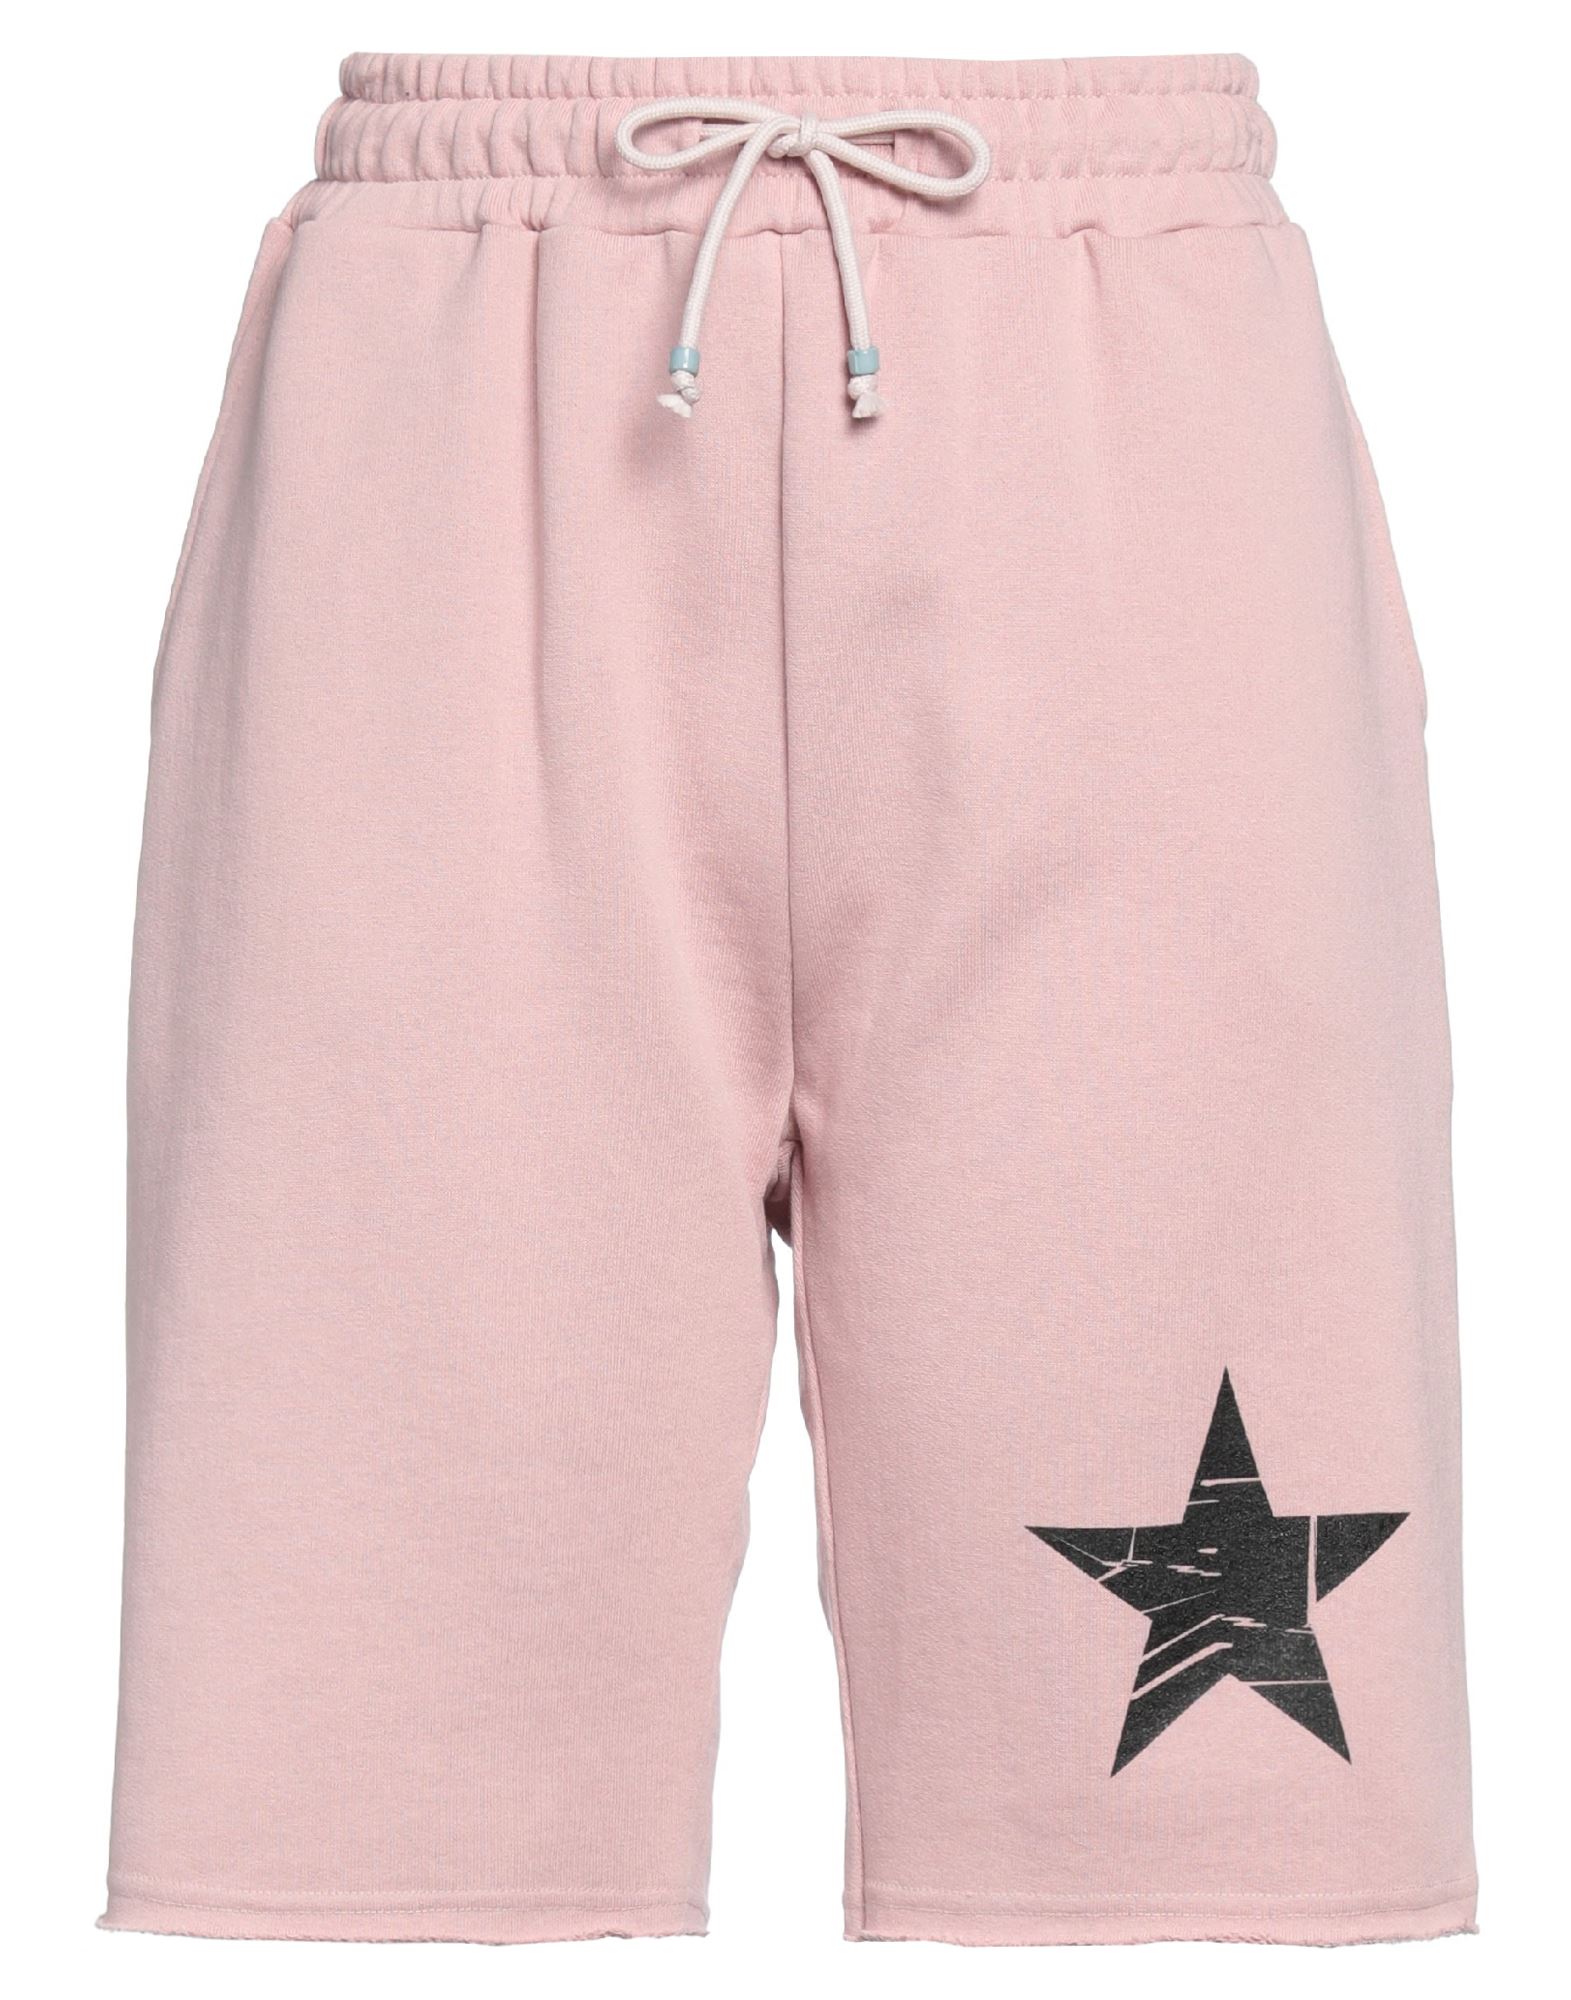 Shirtaporter Woman Shorts & Bermuda Shorts Pastel Pink Size M Cotton